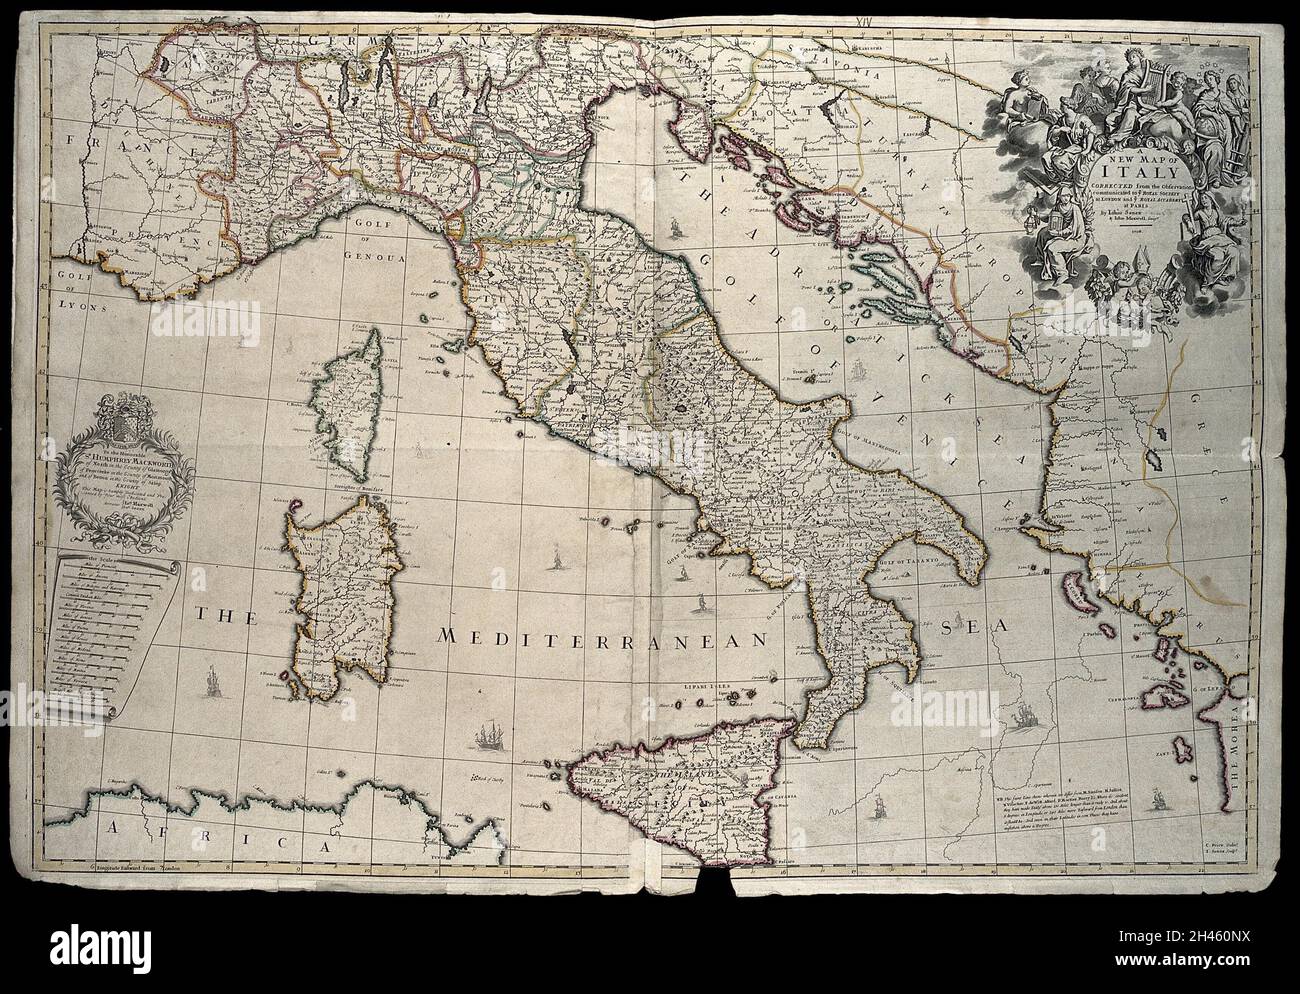 Italien: Karte. Farbstich von J. Senex, 1708, nach C. Price nach John Maxwell. Stockfoto